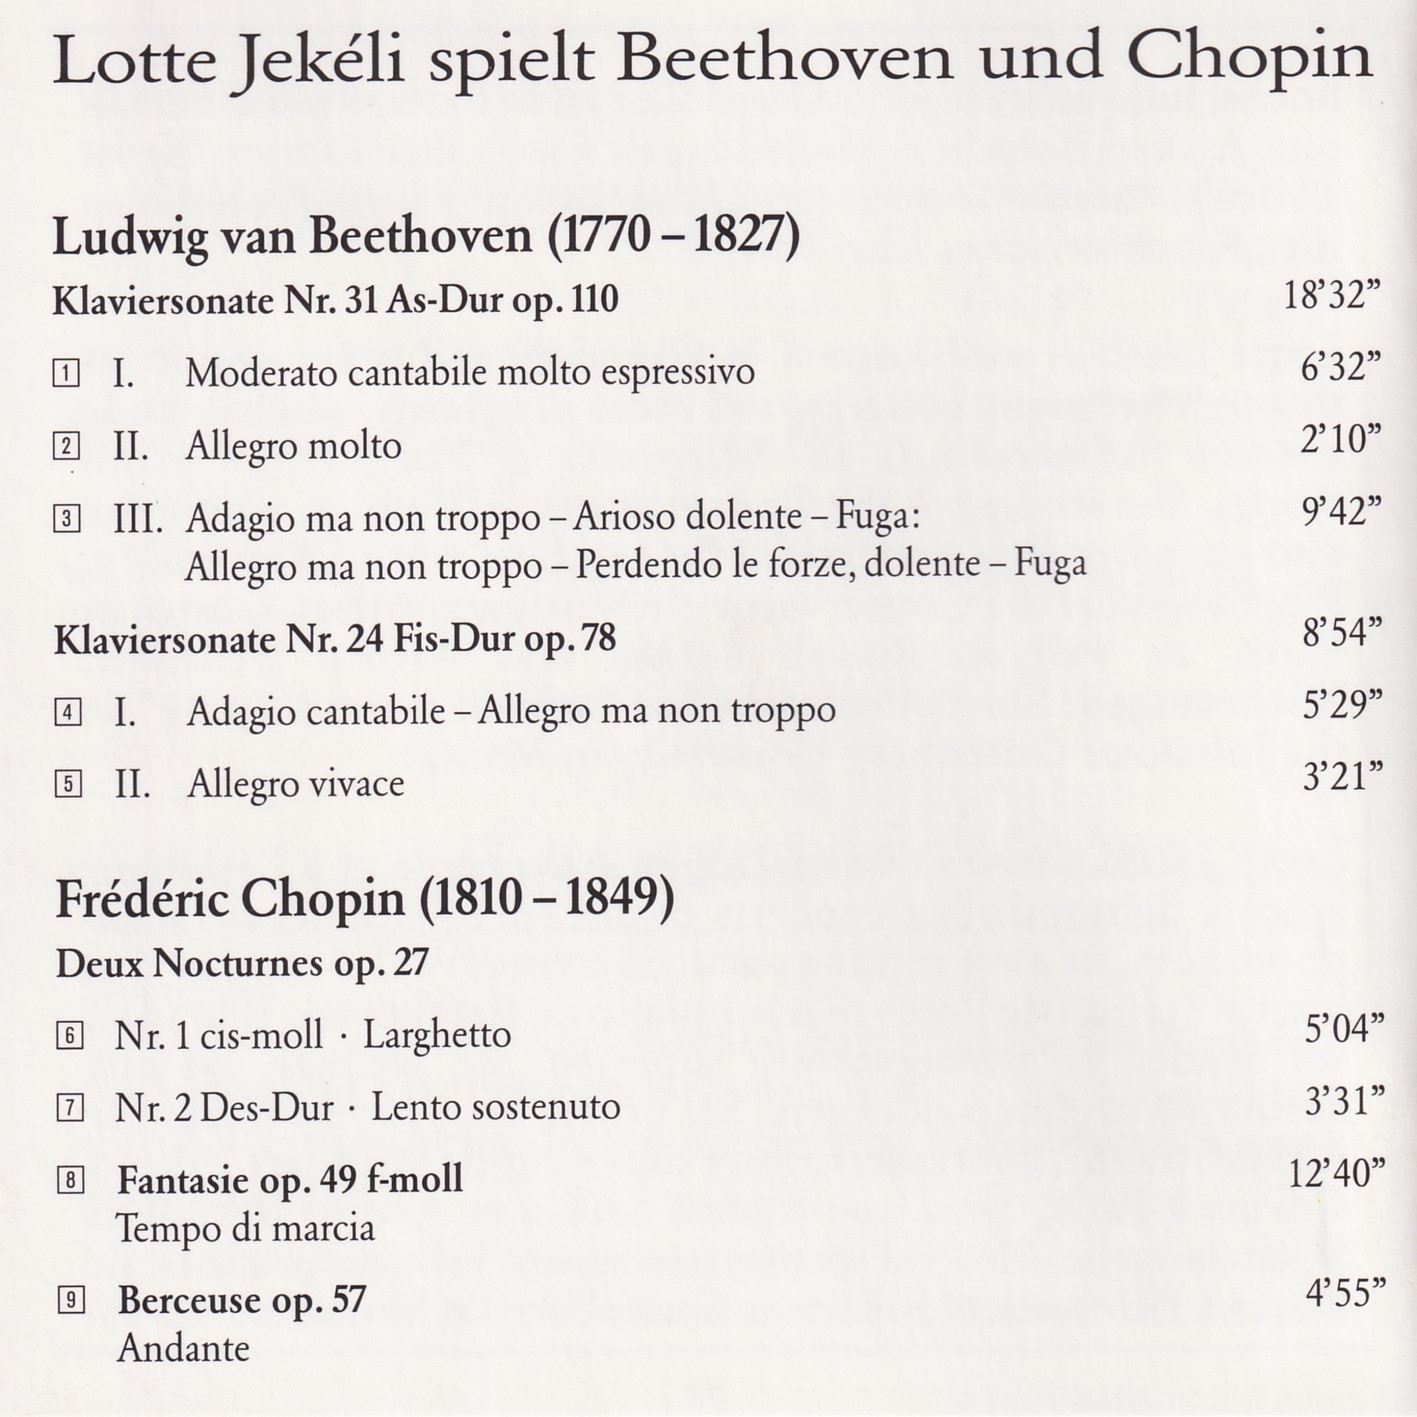 Lotte Jekéli spielt Beethoven und Chopin